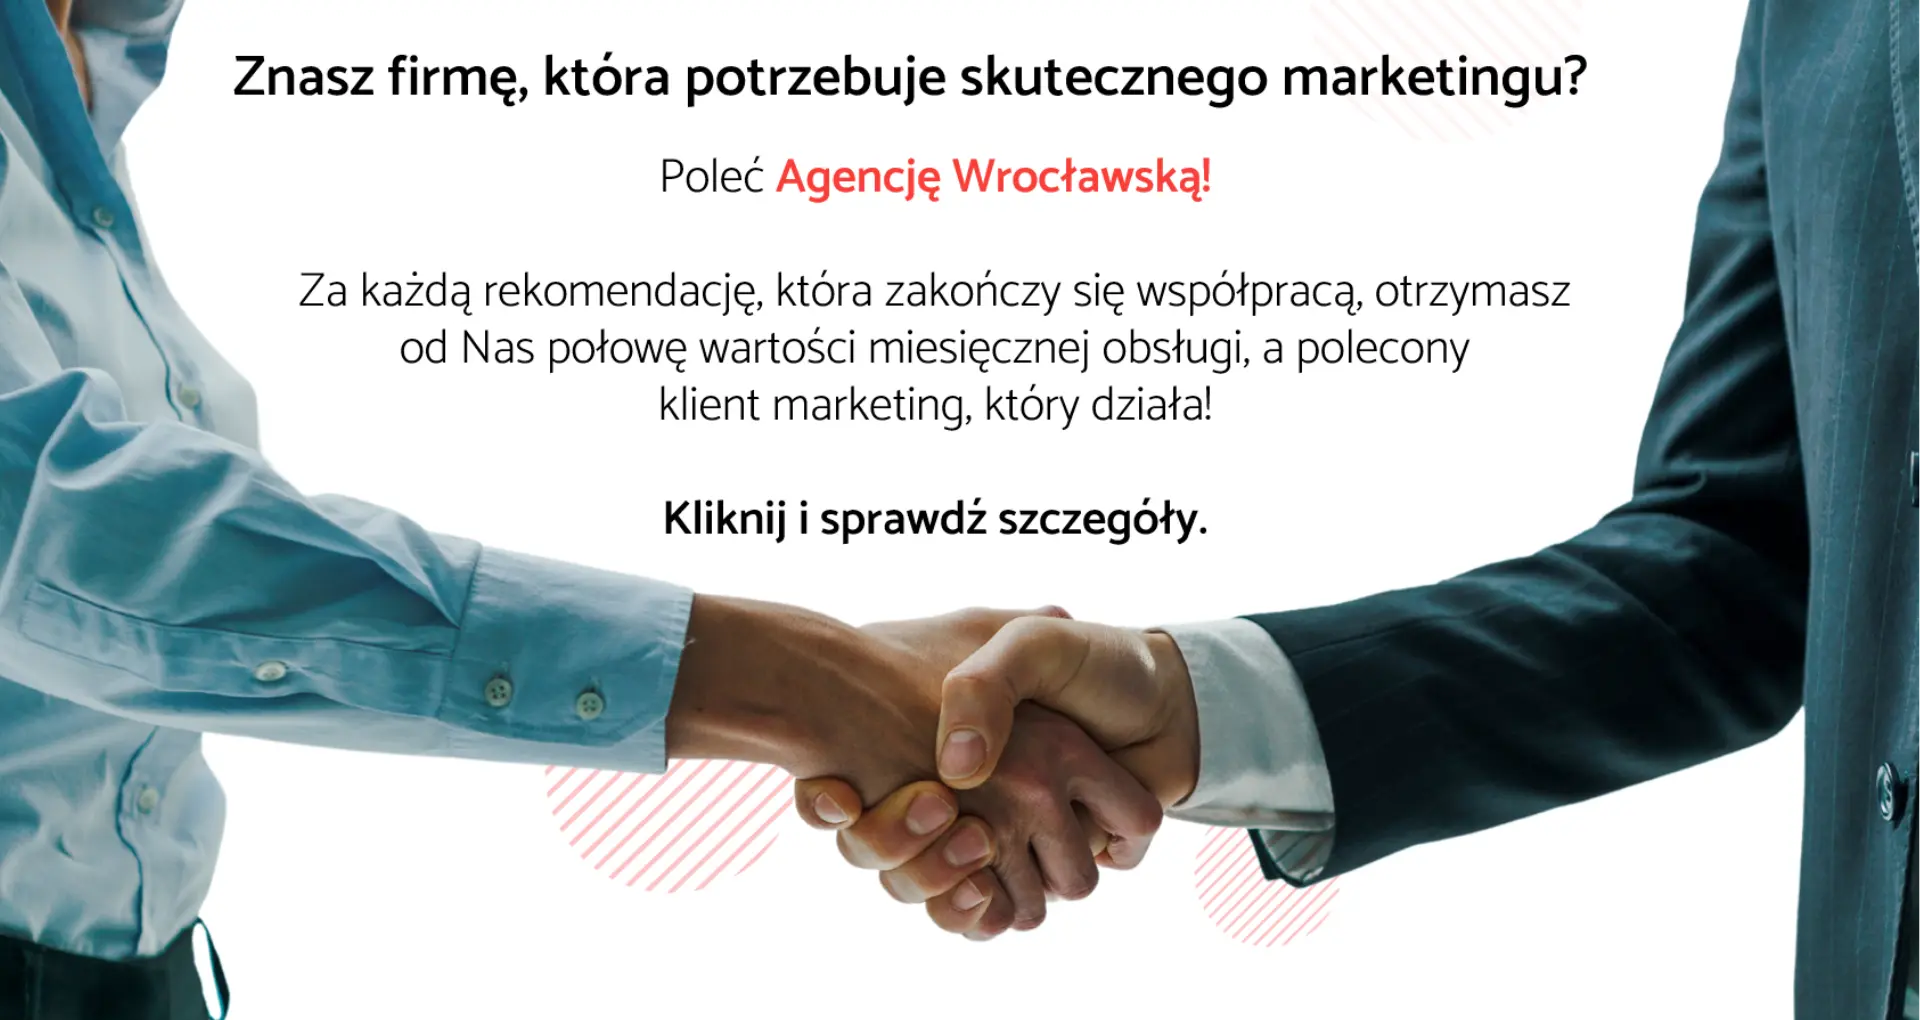 Program afiliacyjny Agencji Wrocławskiej